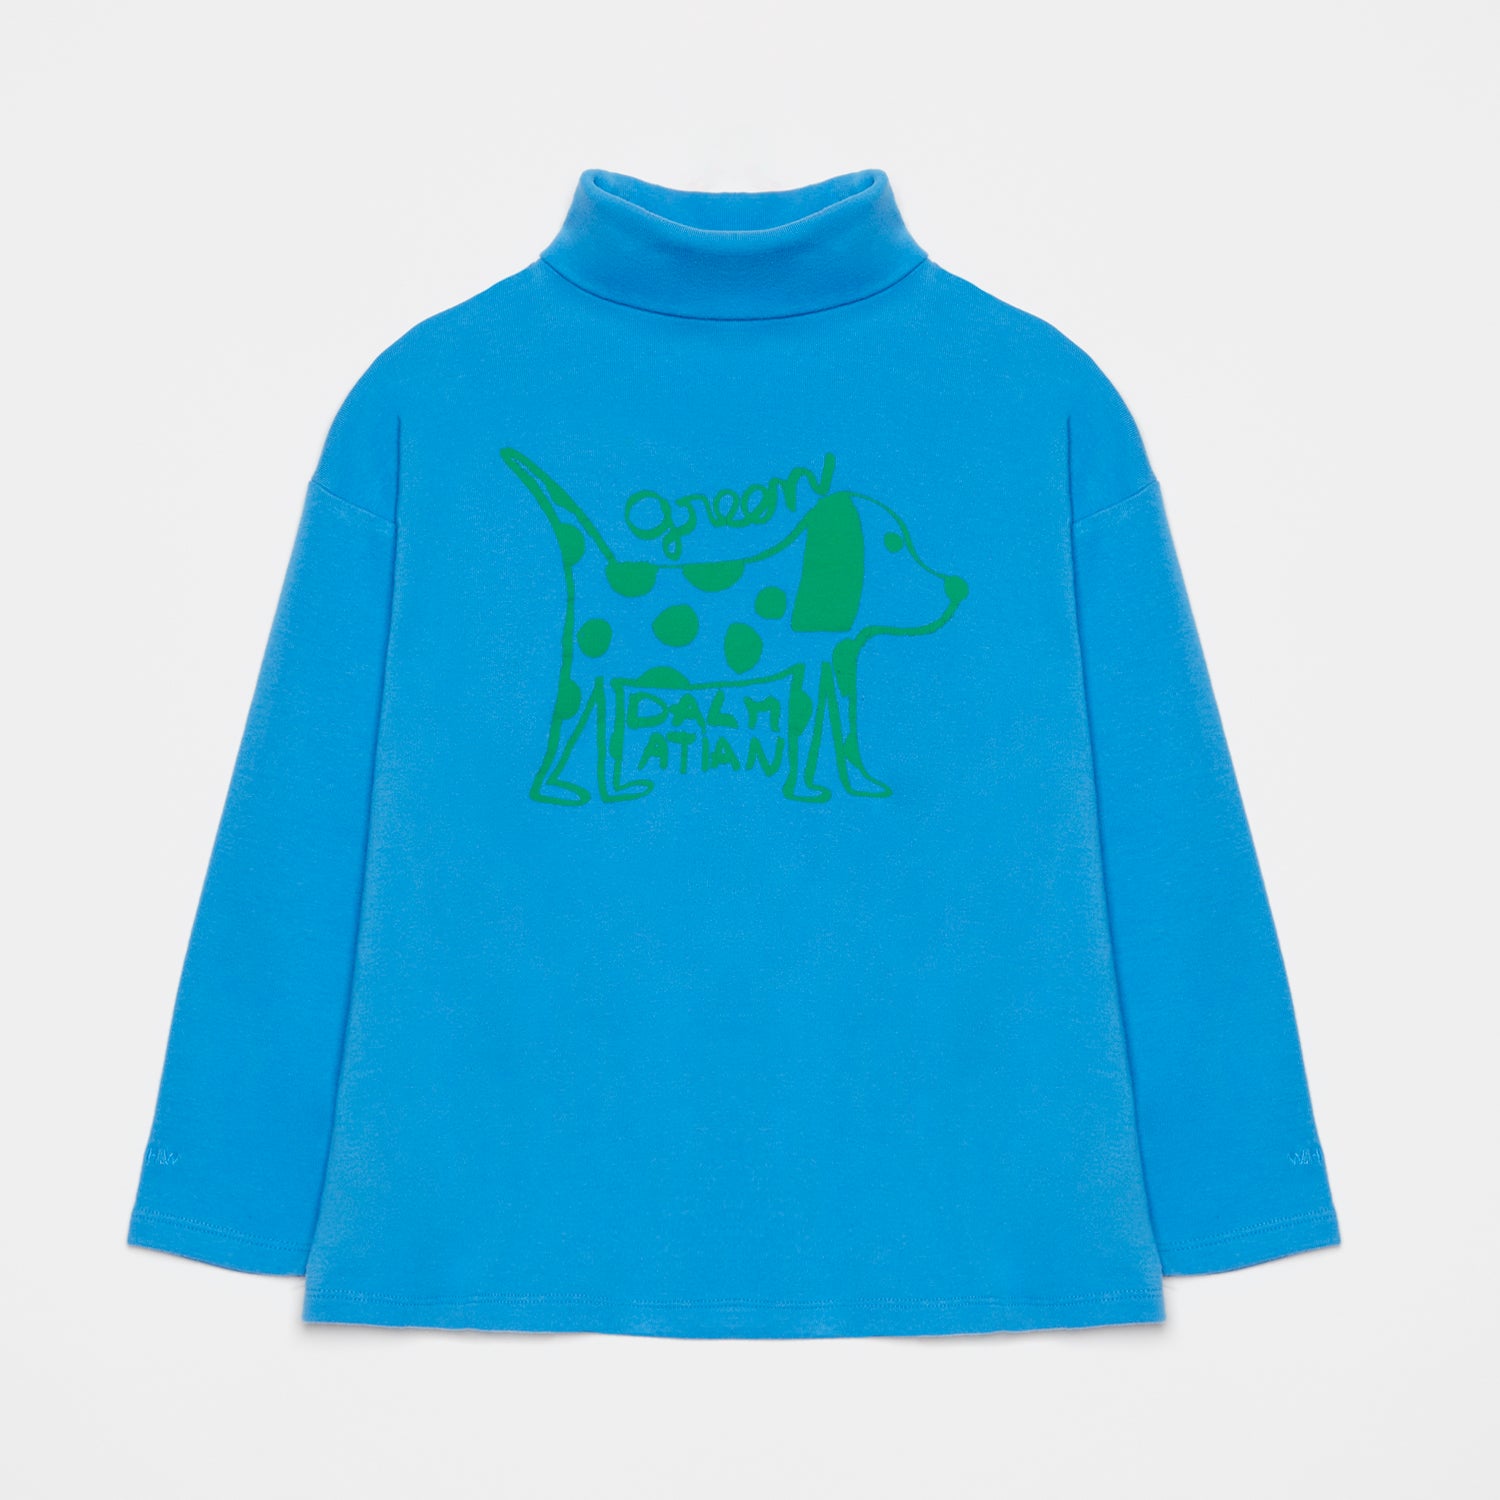 Boys & Girls Blue Printed Cotton T-Shirt